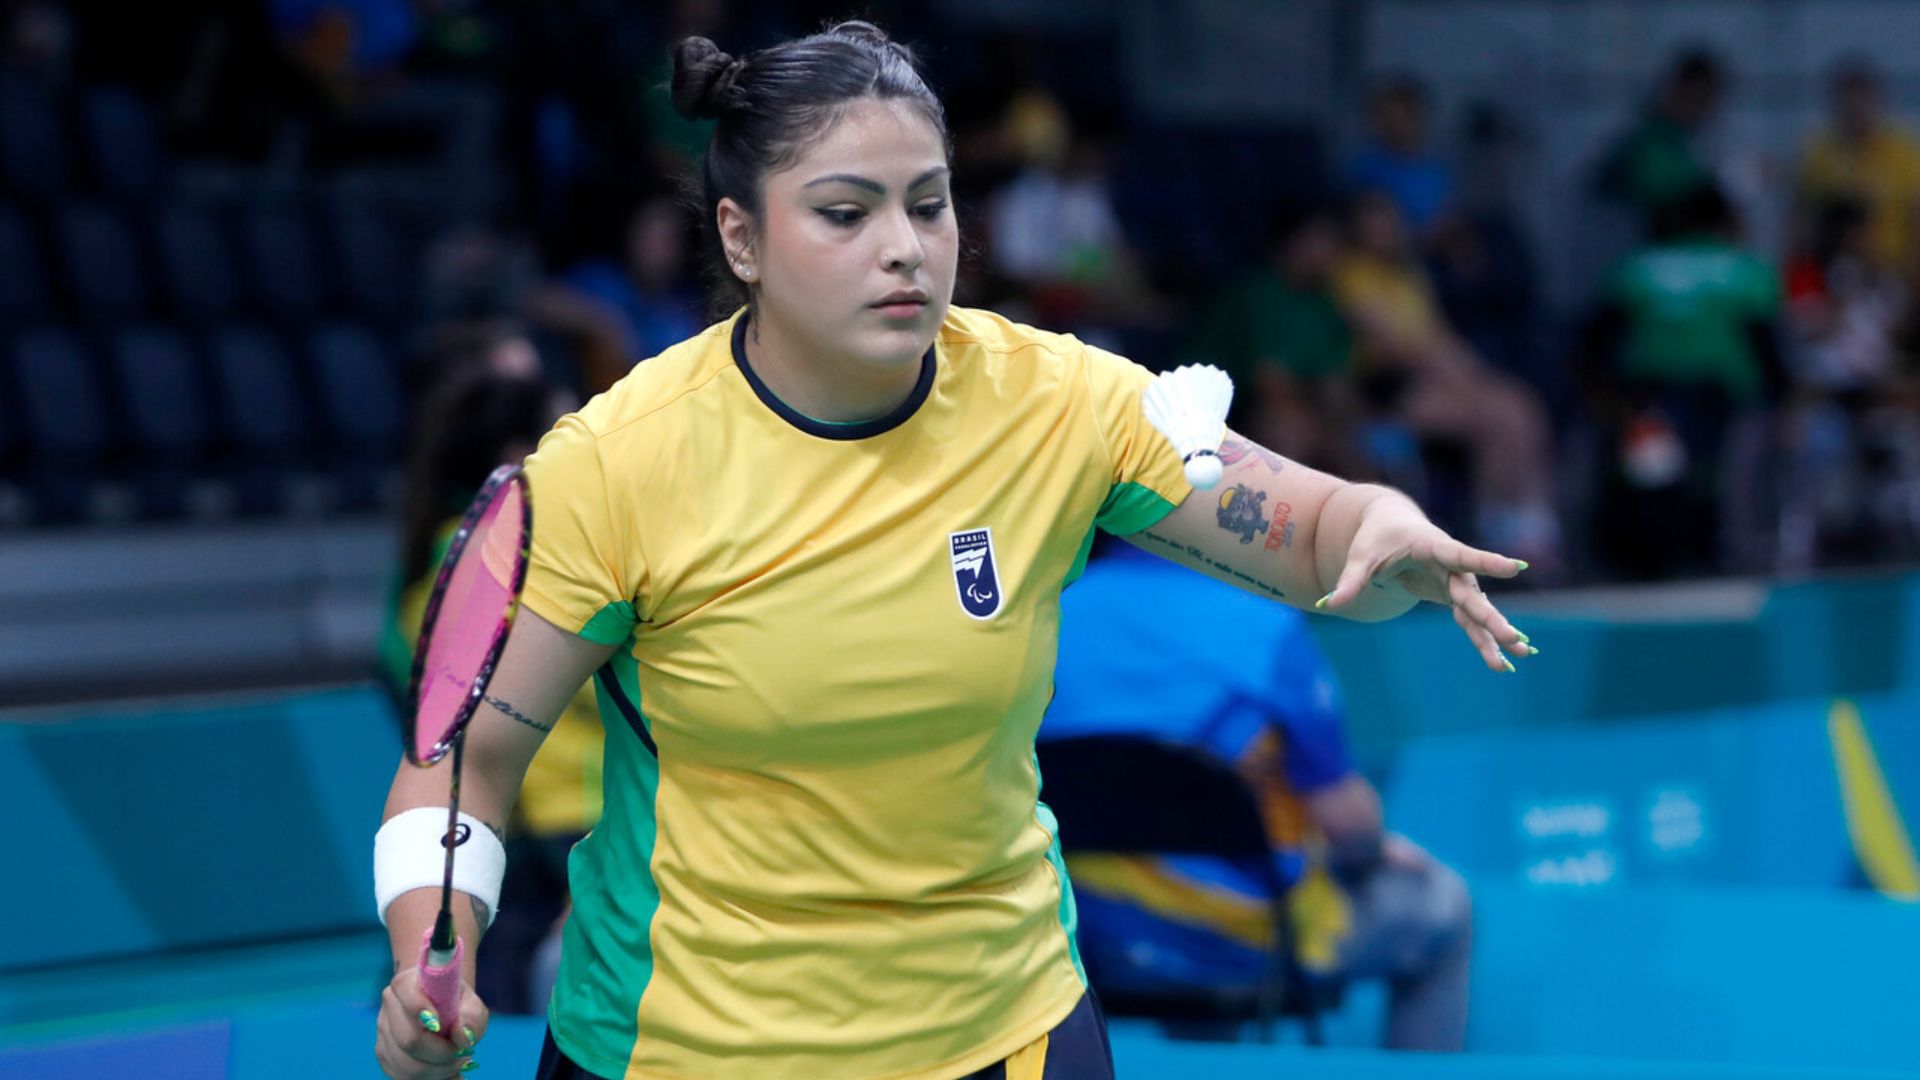 Para bádminton: Edwarda Oliveira quiere seguir sumando oro para Brasil